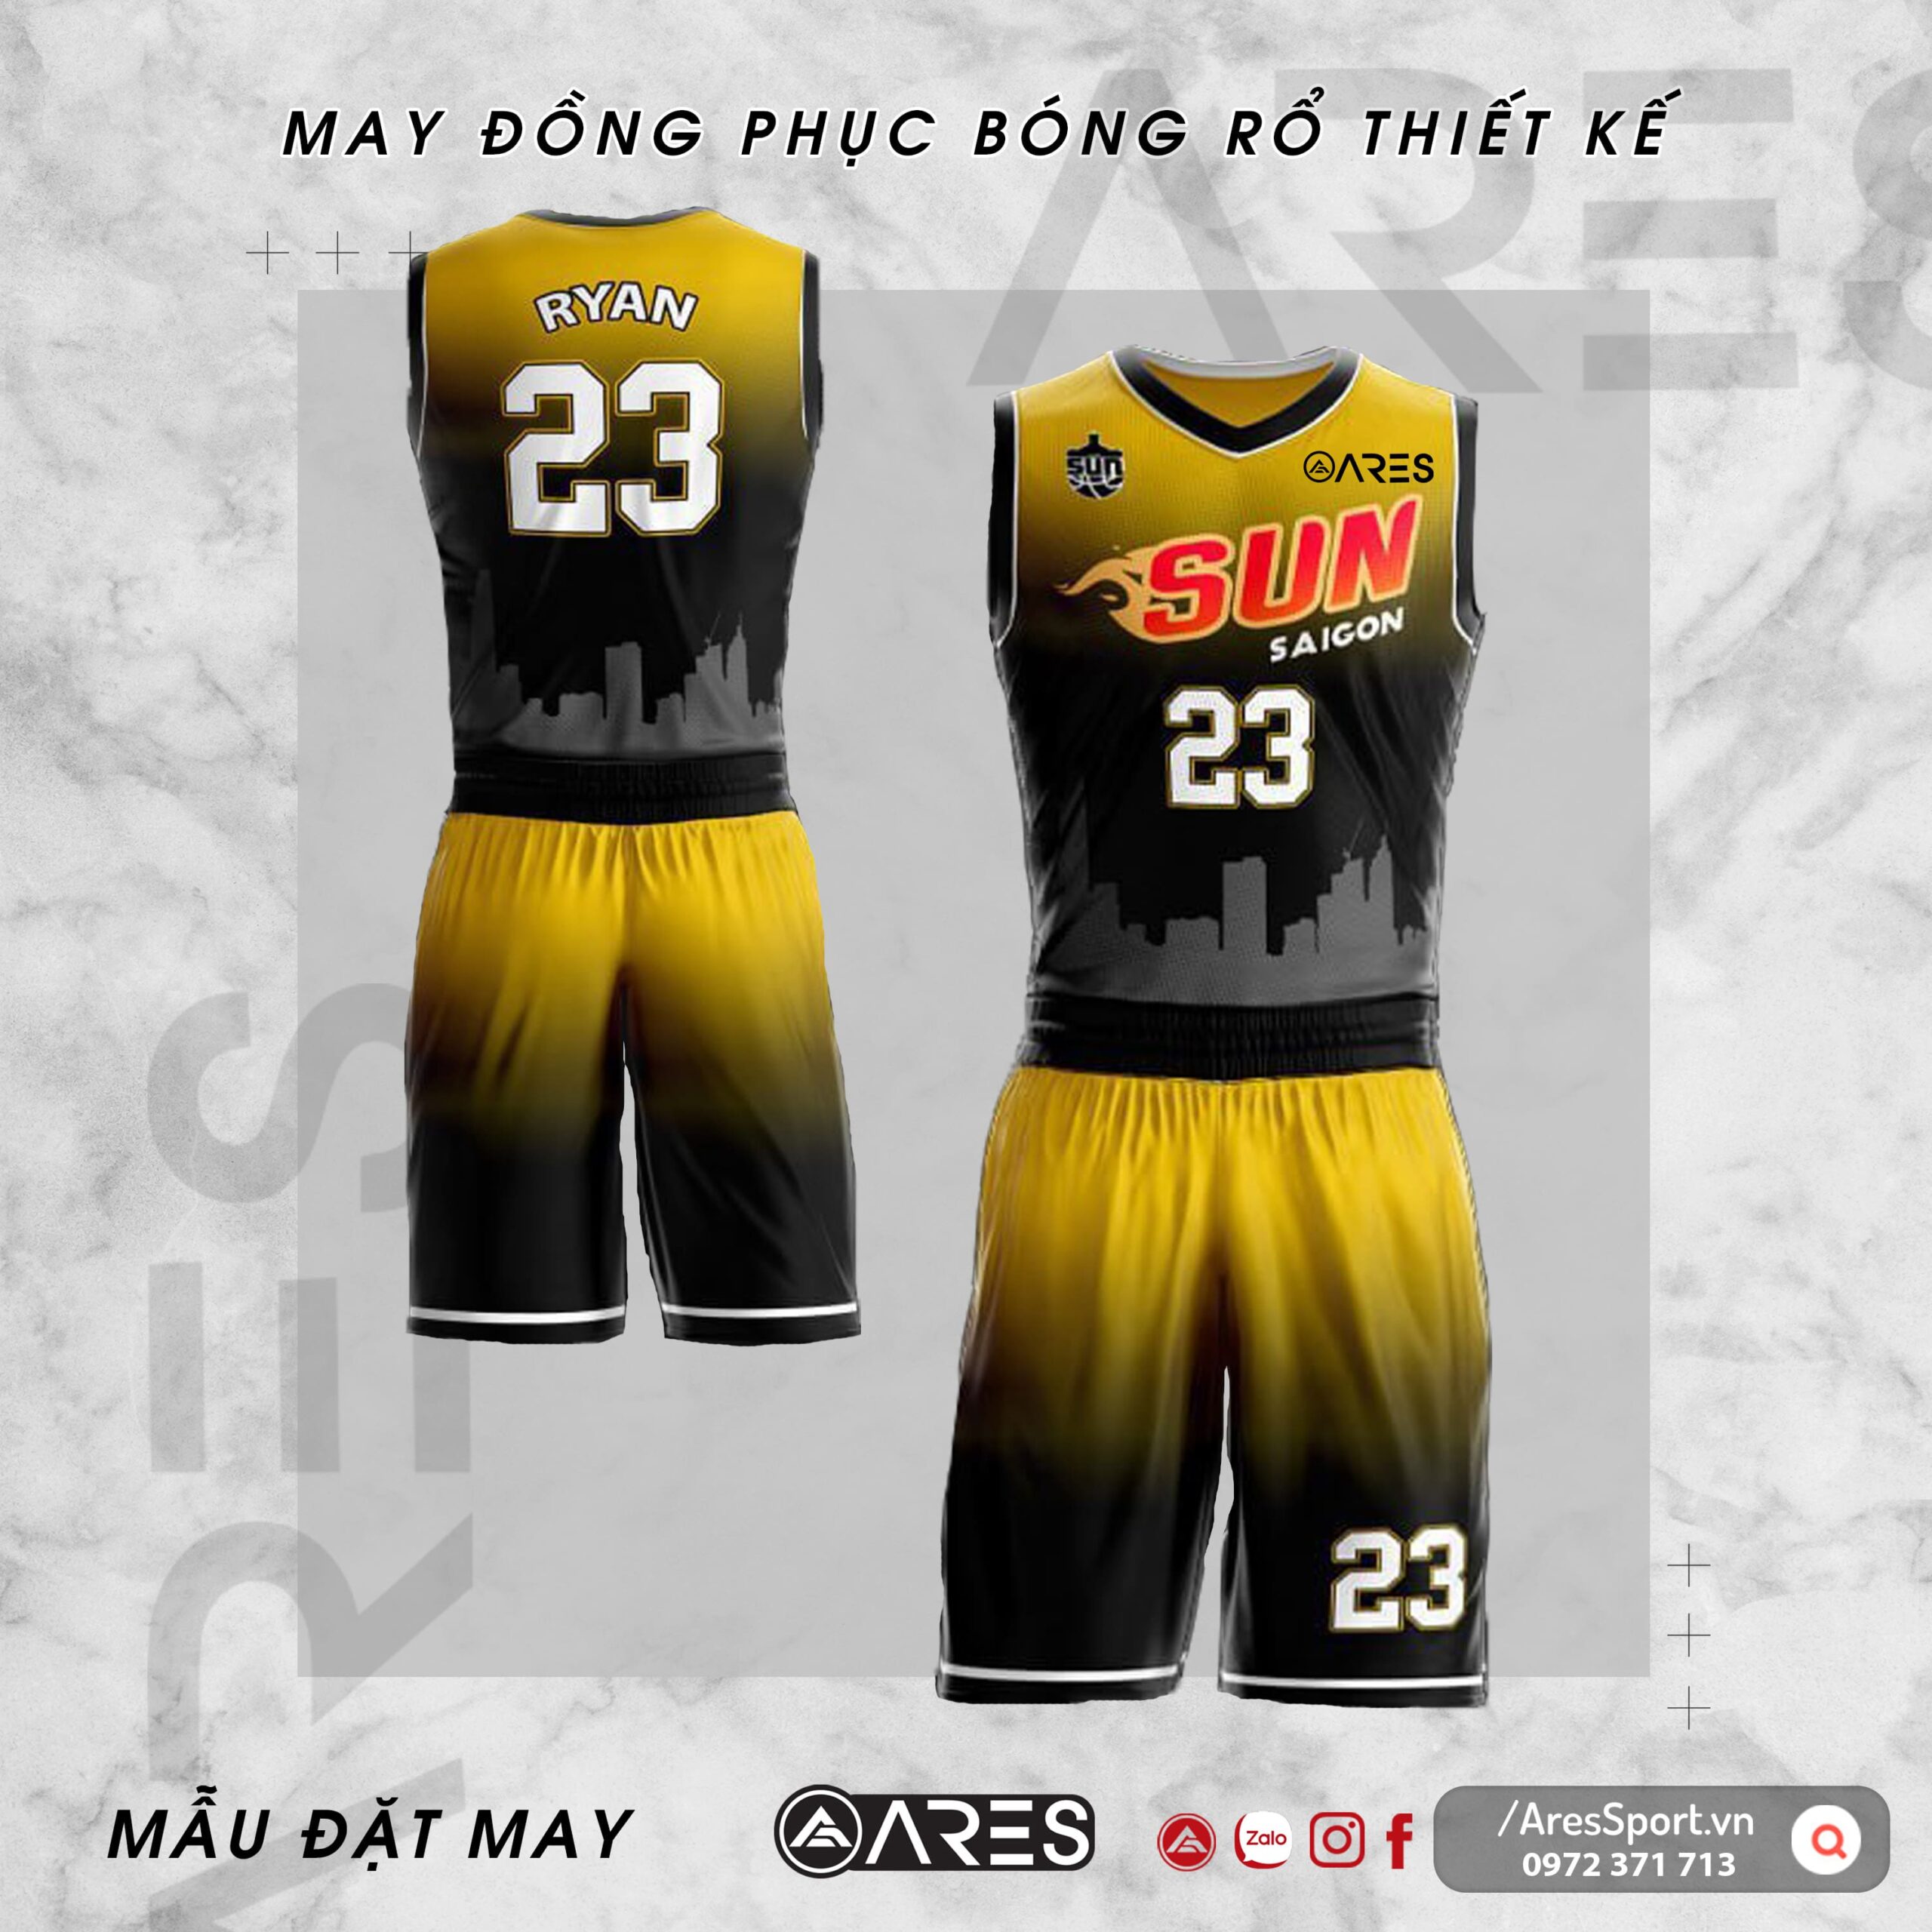 Đồng phục bóng rổ thiết kế Sun vàng chuyển đen thu hút độc đáo